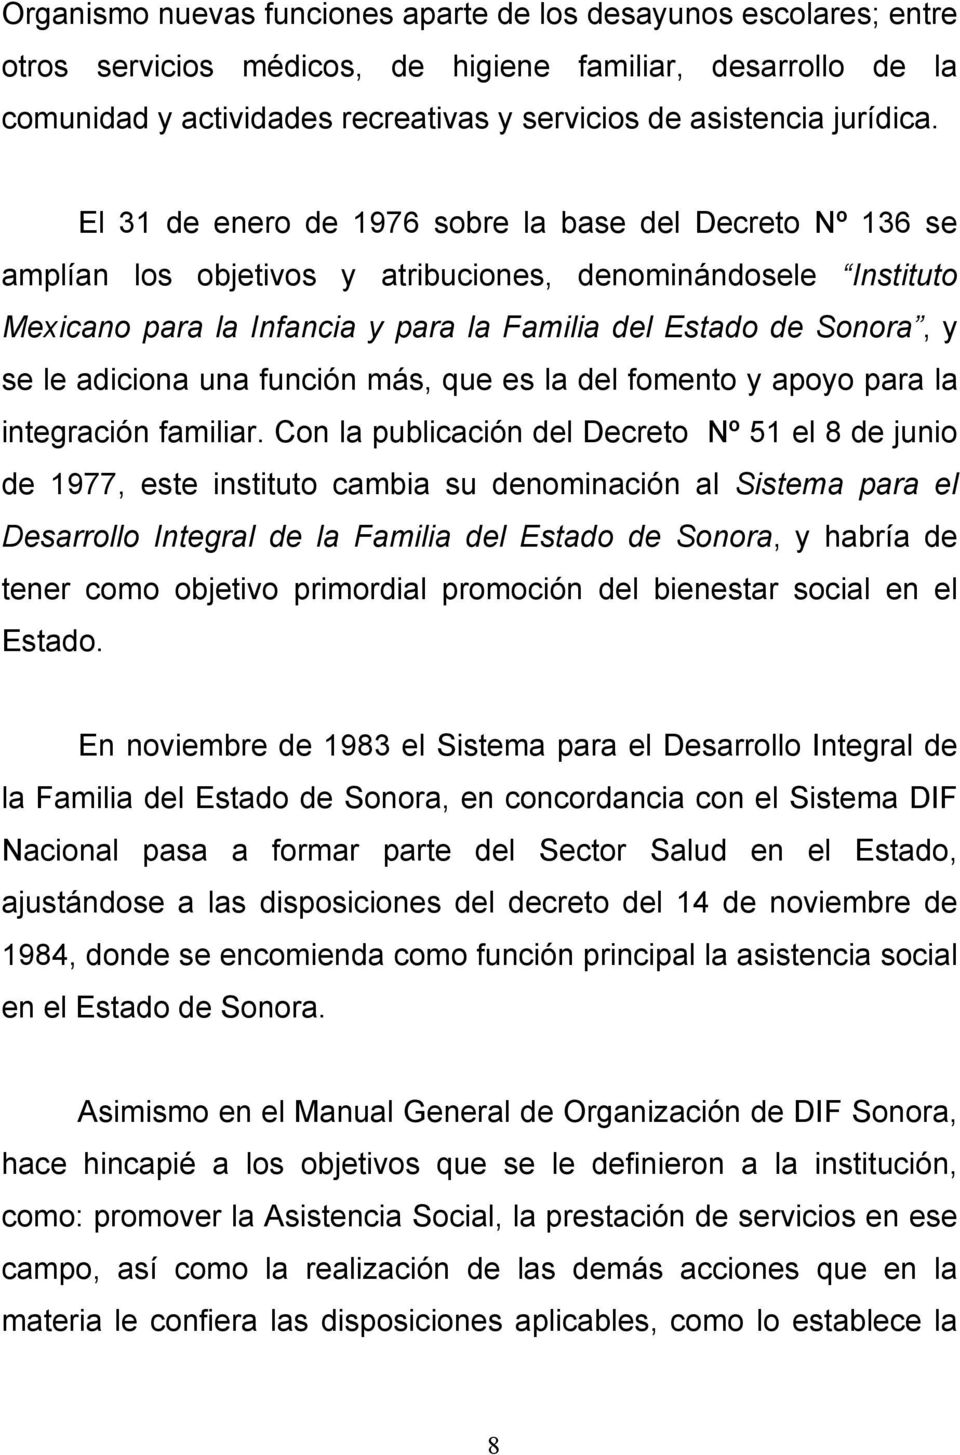 El 31 de enero de 1976 sobre la base del Decreto Nº 136 se amplían los objetivos y atribuciones, denominándosele Instituto Mexicano para la Infancia y para la Familia del Estado de Sonora, y se le